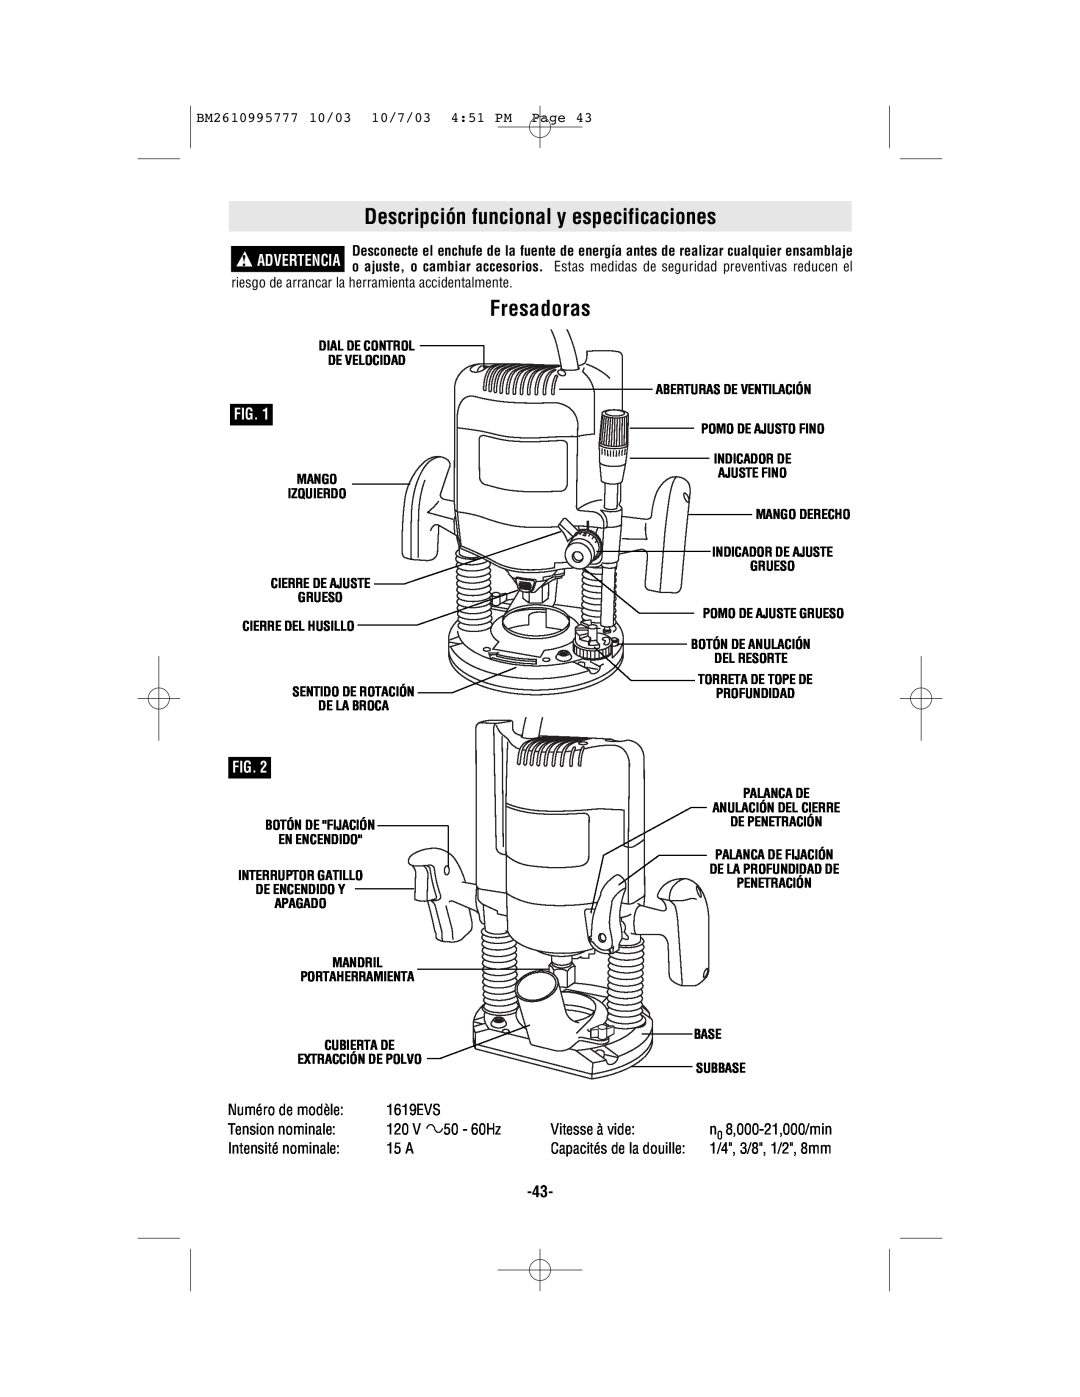 Bosch Power Tools 1619EVS Descripción funcional y especificaciones, Fresadoras, 10/7/03 451 PM Page, Mango, Ajuste Fino 